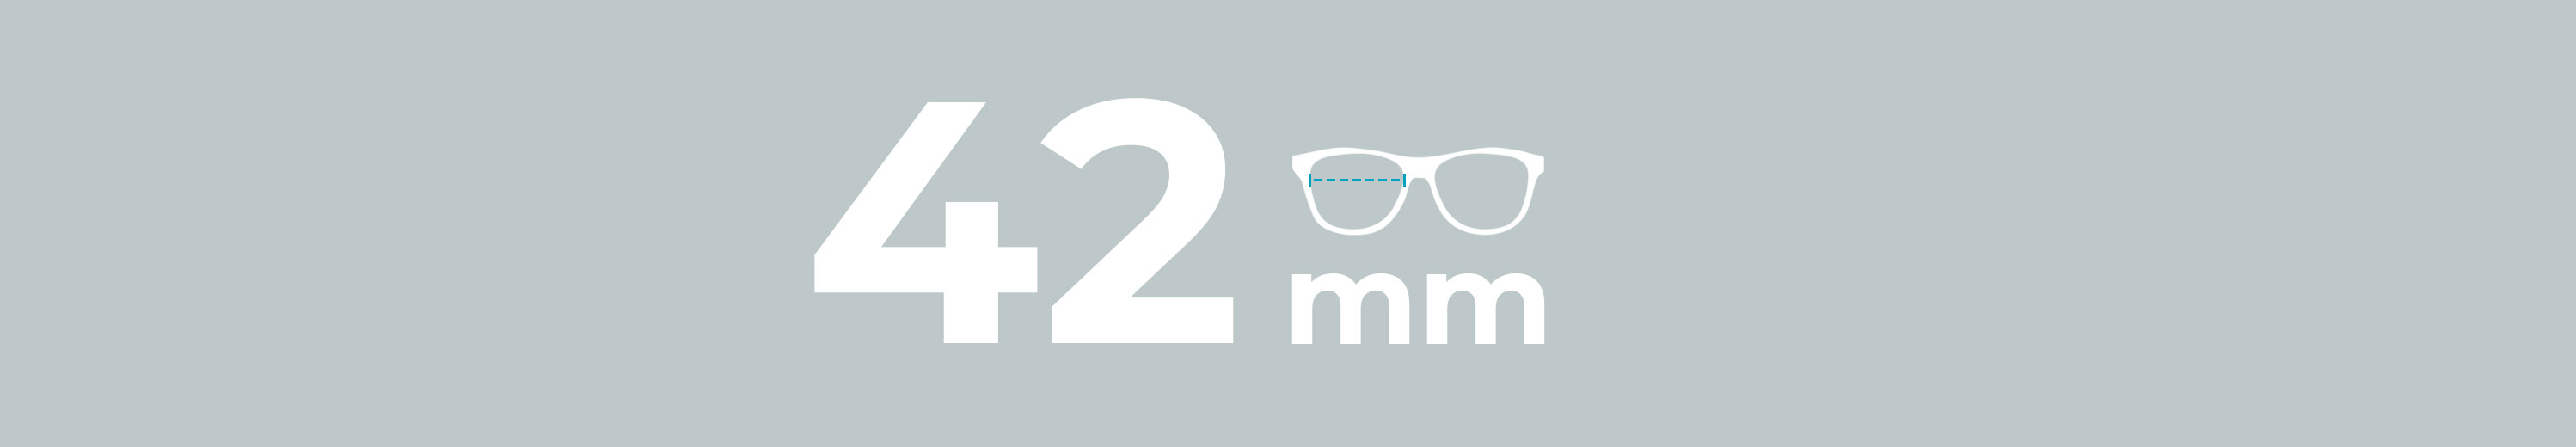 Eyeglasses 42mm Lens